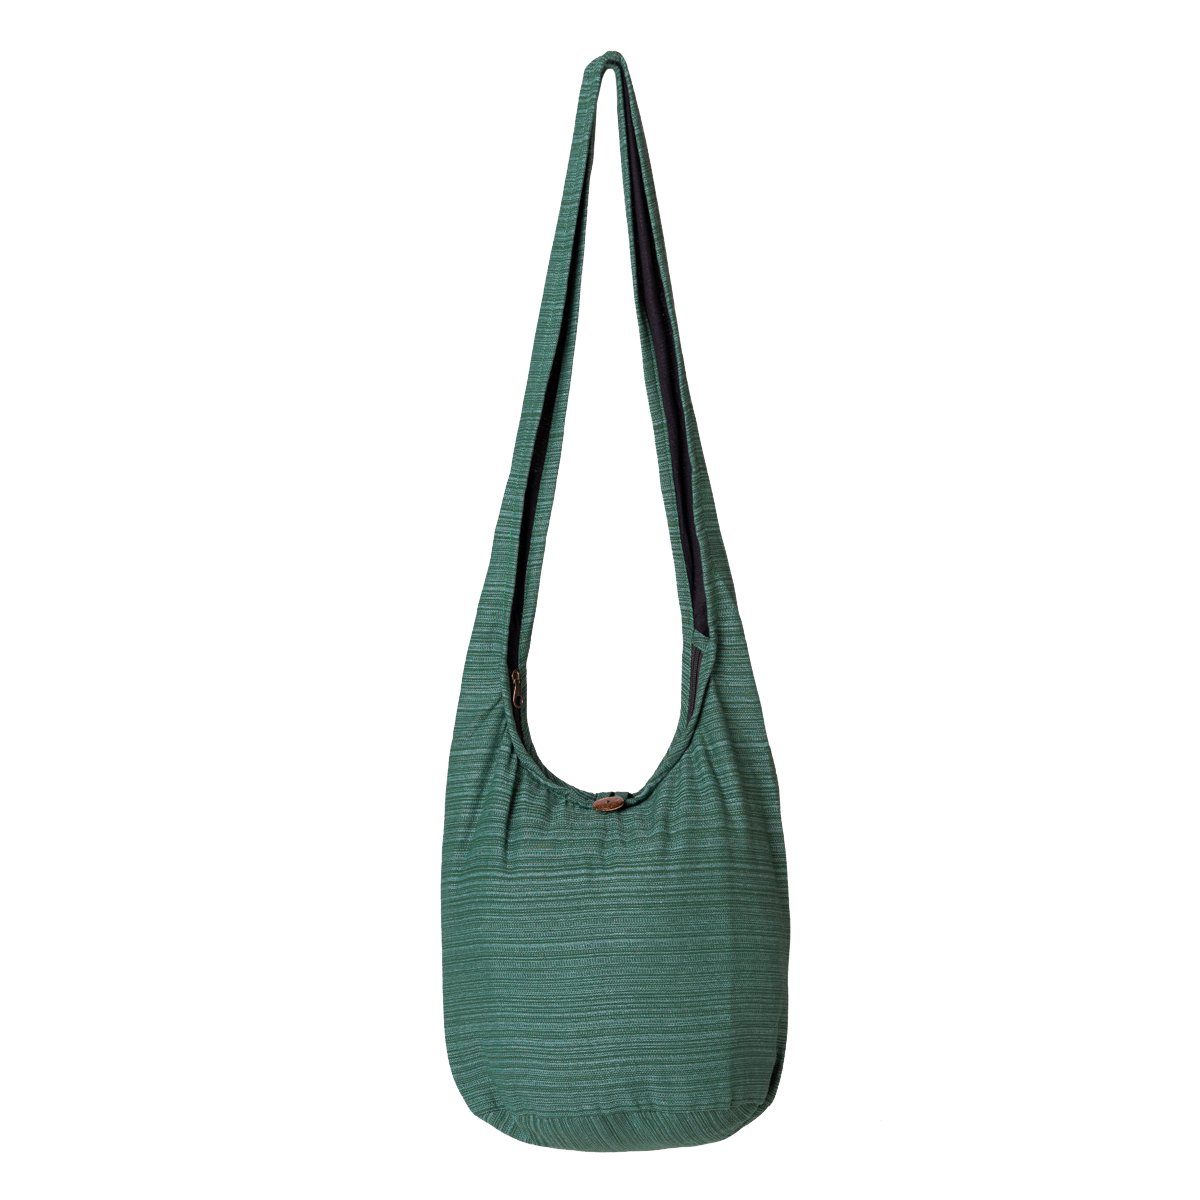 PANASIAM Baumwolle 2 Strandtasche Schultertasche, als Wickeltasche Schulterbeutel Grün Lini aus Handtasche Größen oder 100% Yogatasche In nutzbar Beuteltasche auch